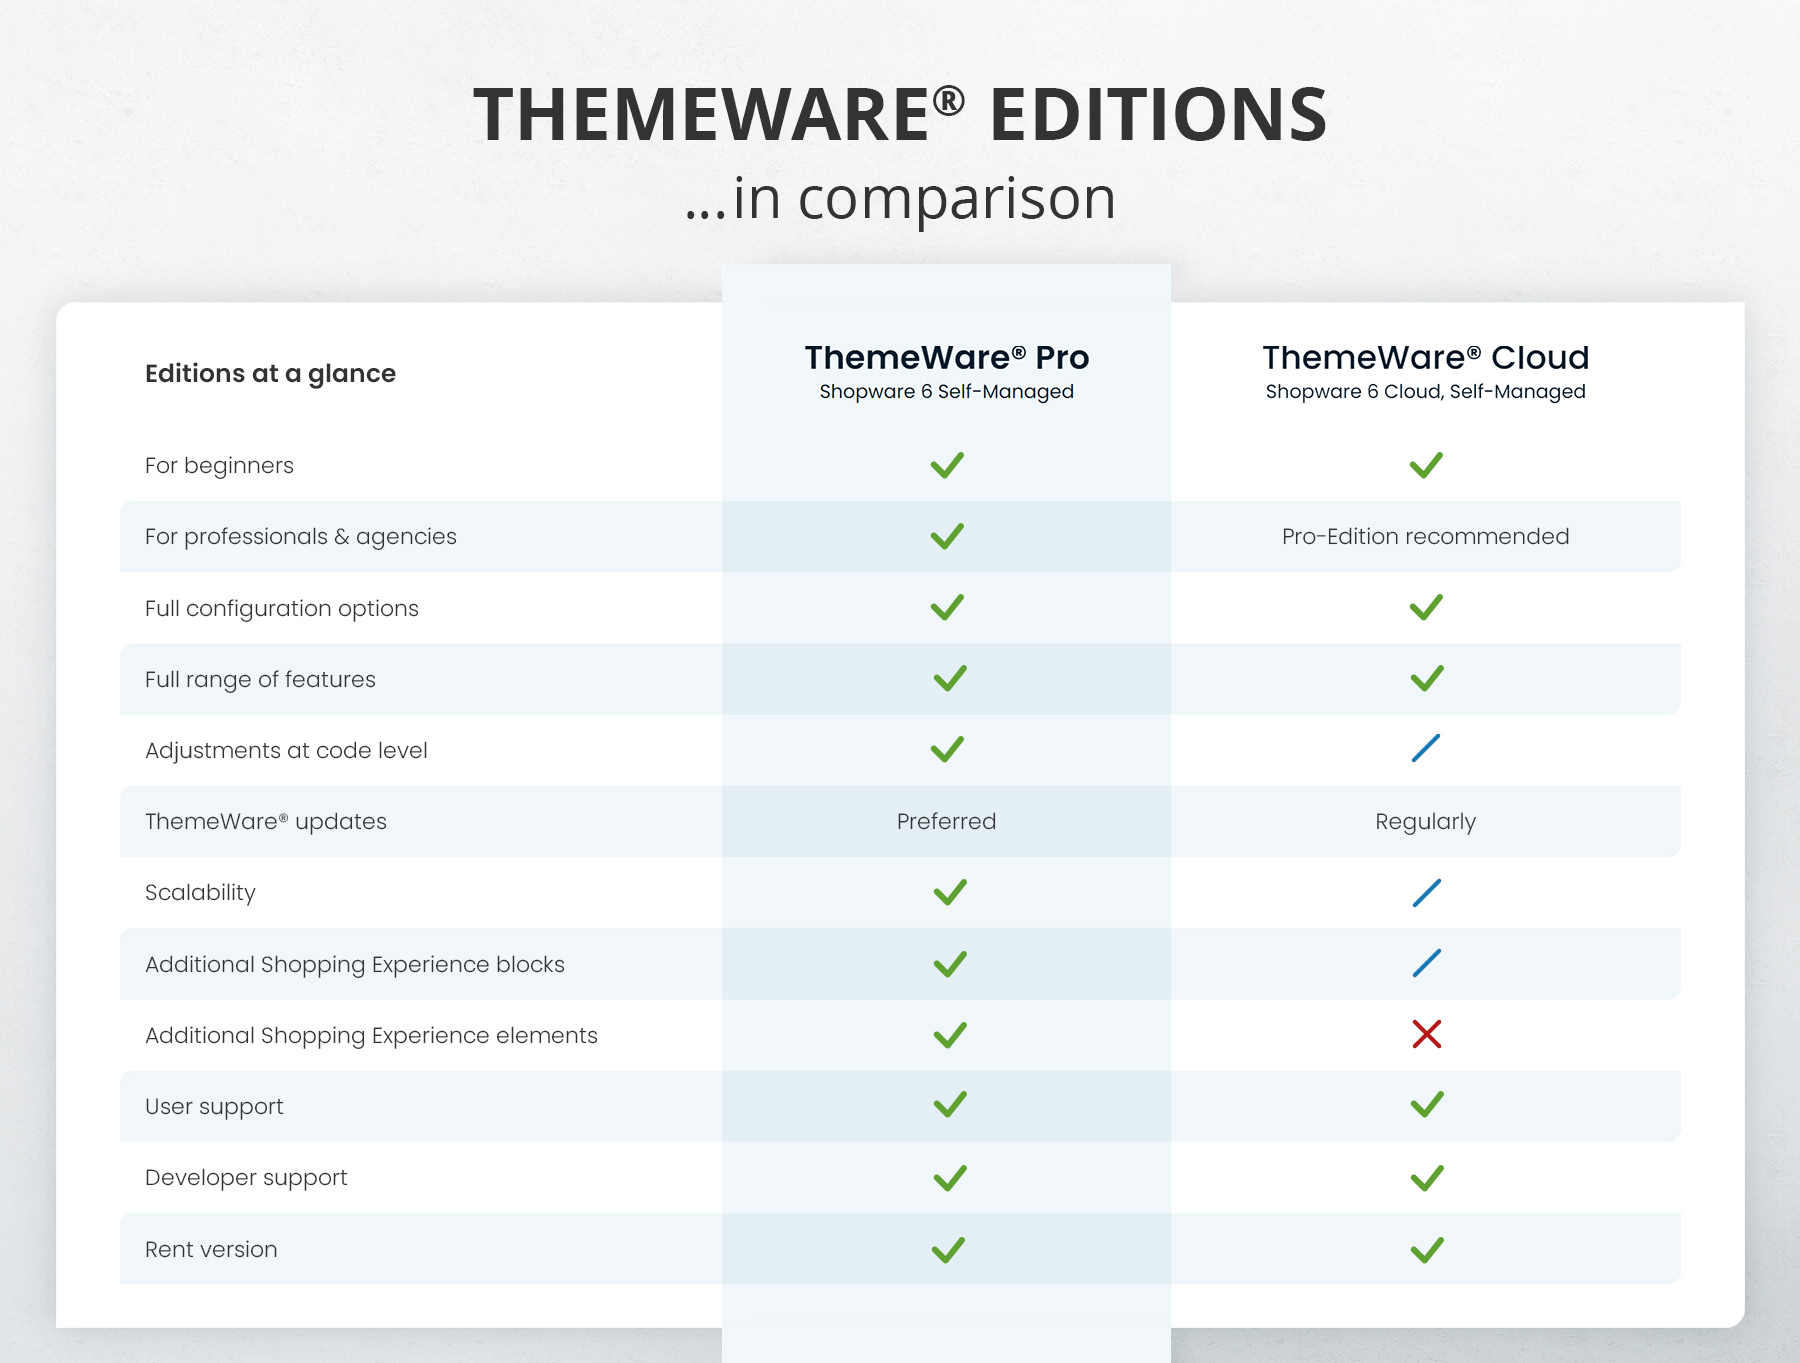 ThemeWare® editions in comparison